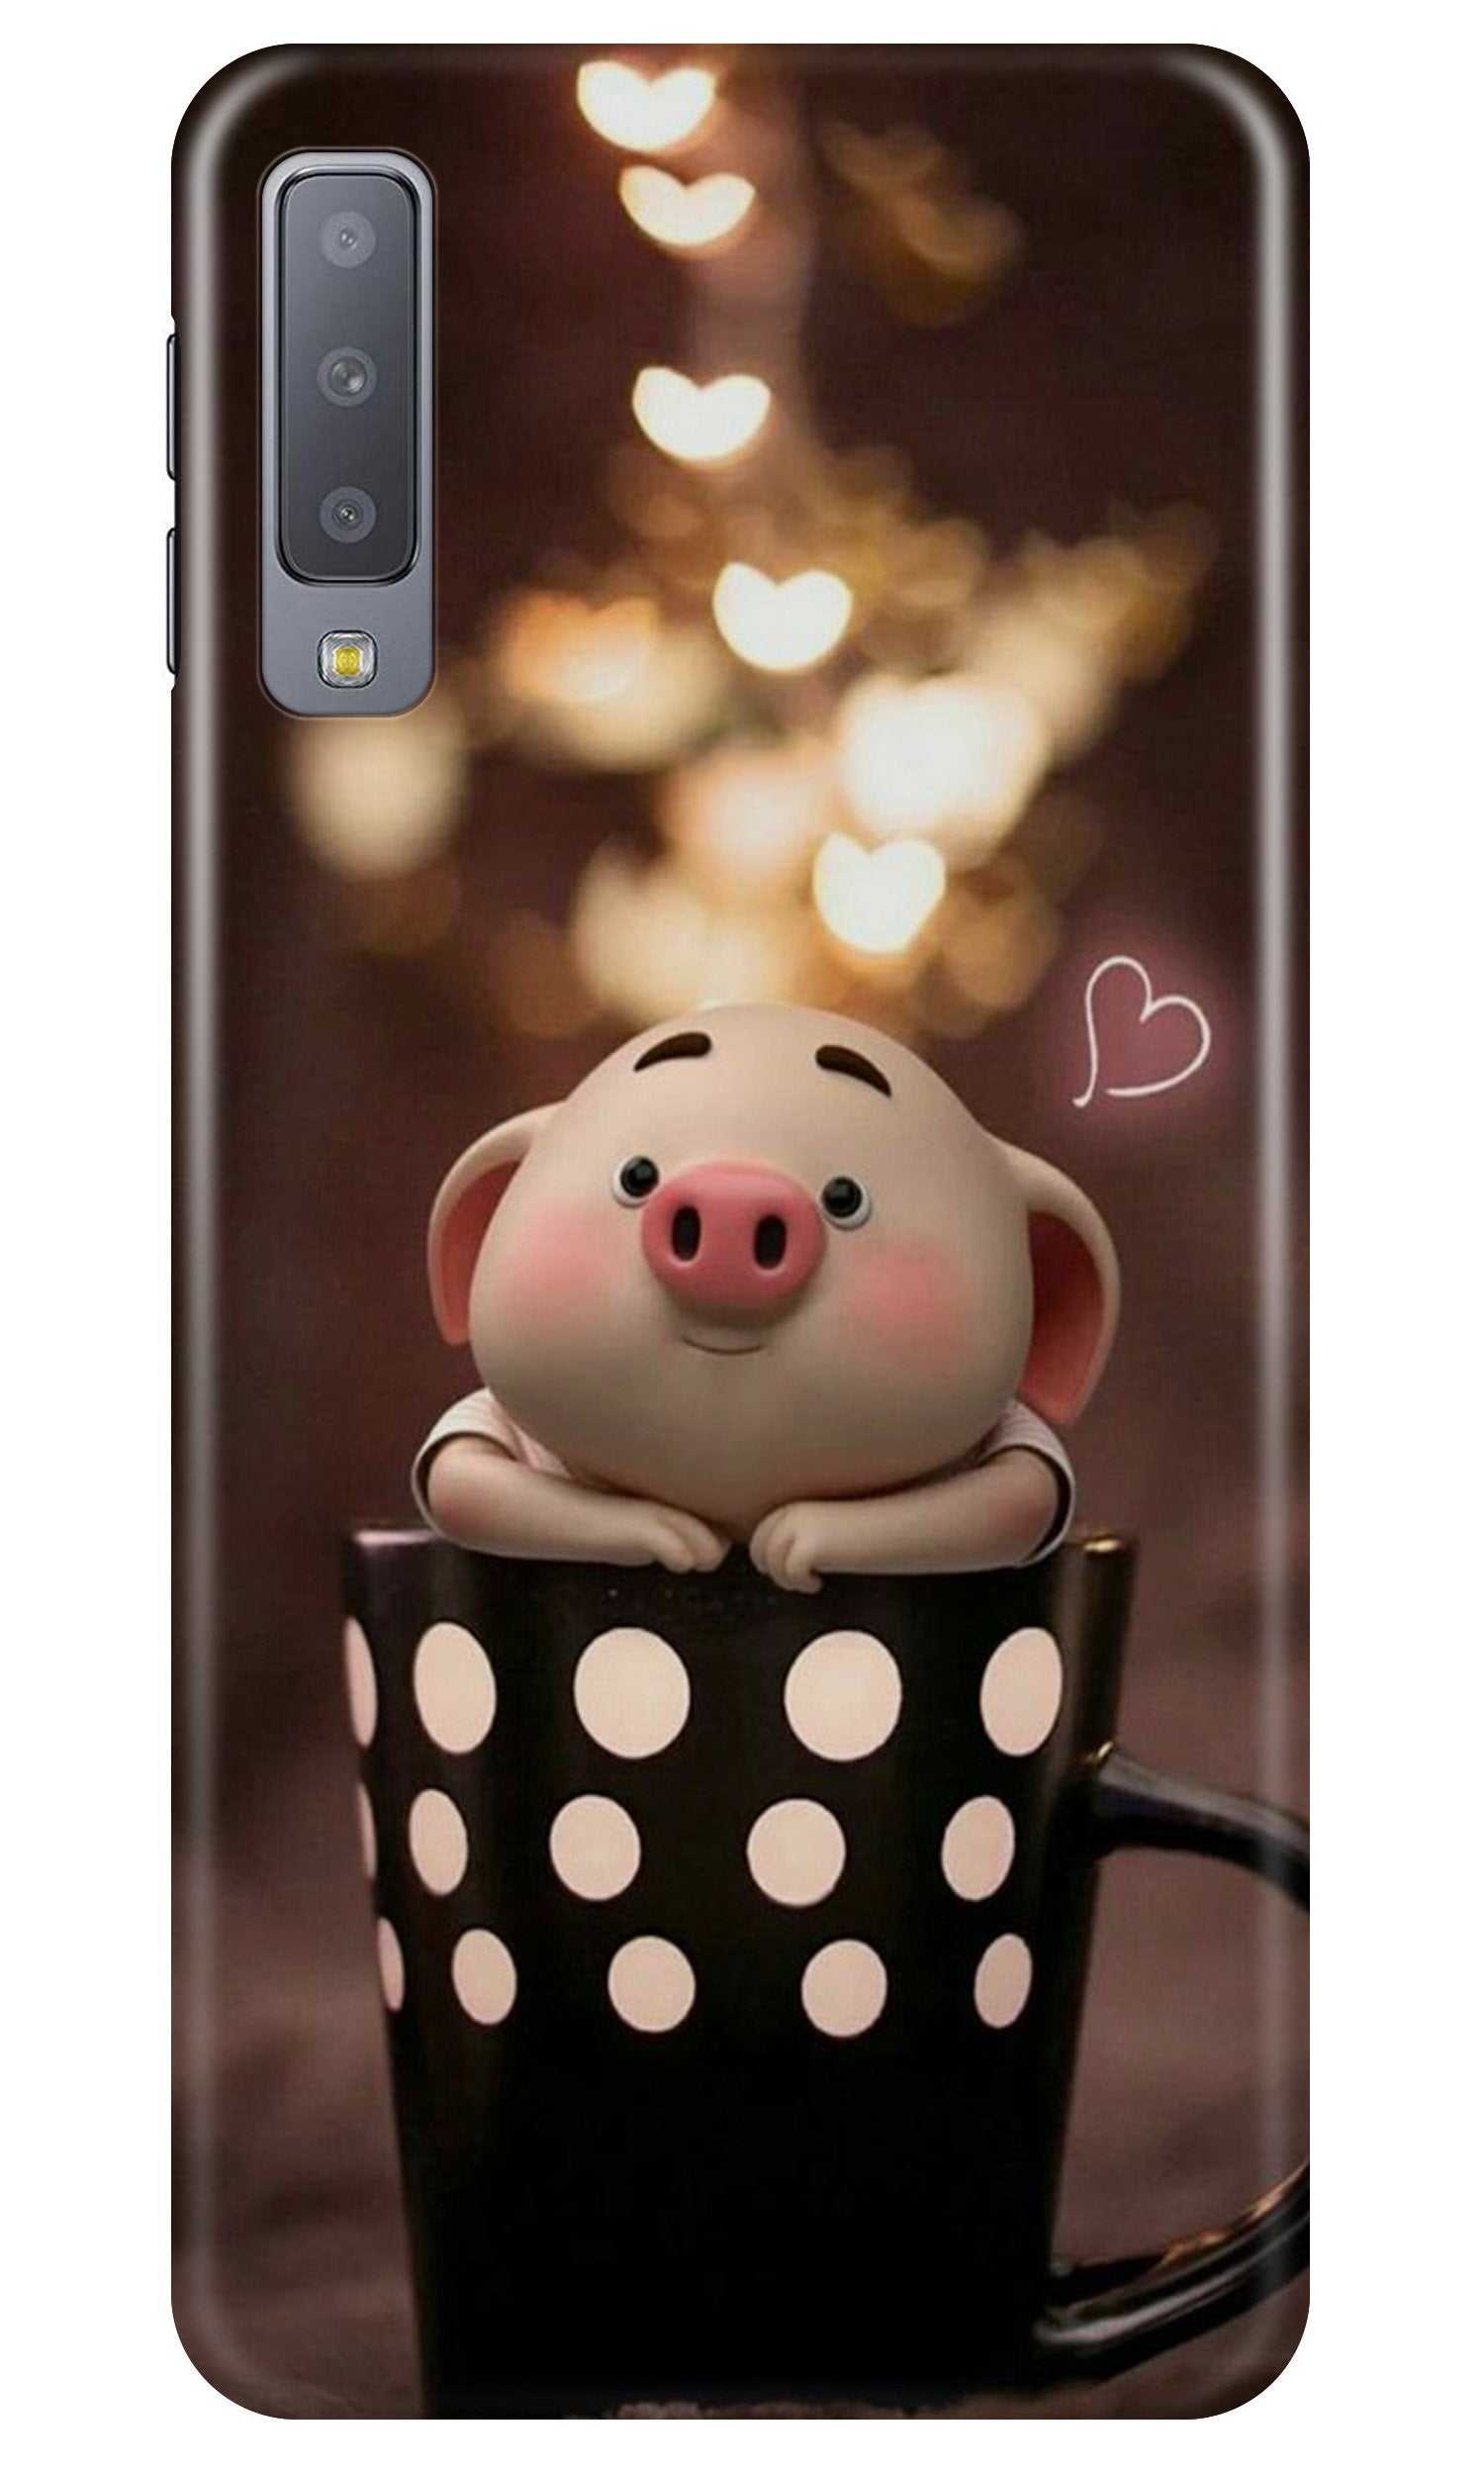 Cute Bunny Case for Samung Galaxy A70s (Design No. 213)